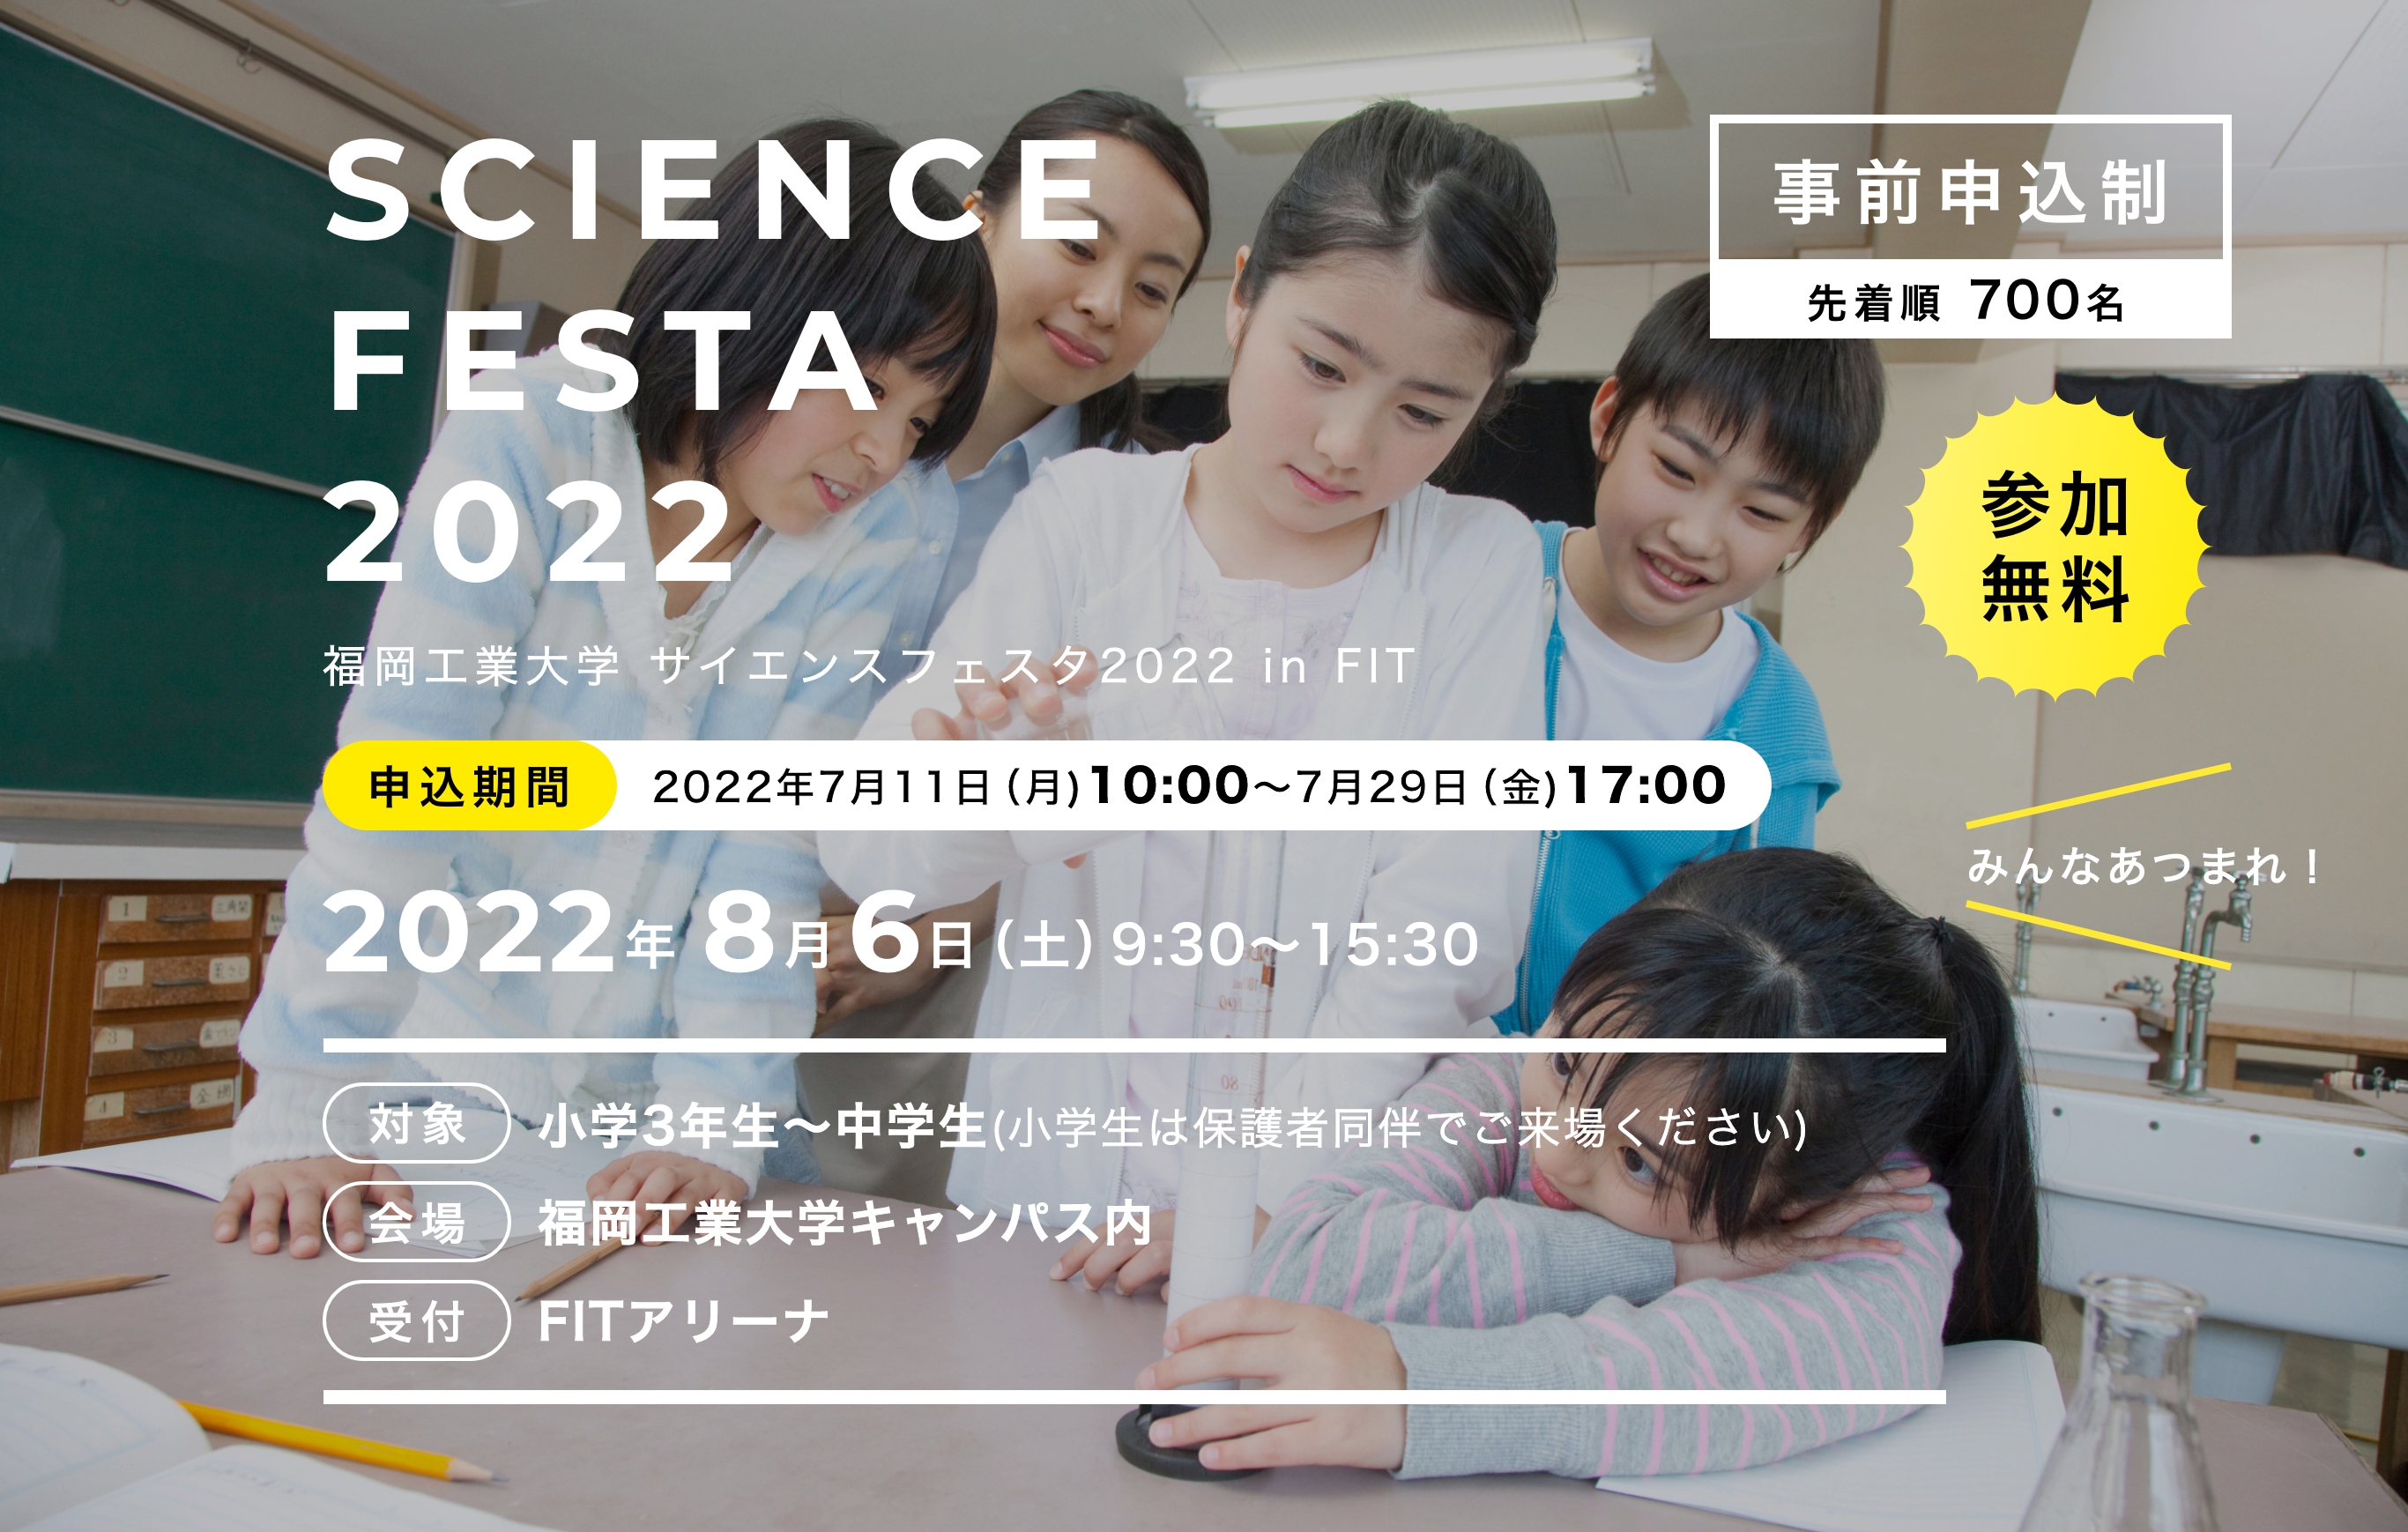 SCIENCE FESTA 2022 福岡工業大学 サイエンスフェスタ2022 in FIT